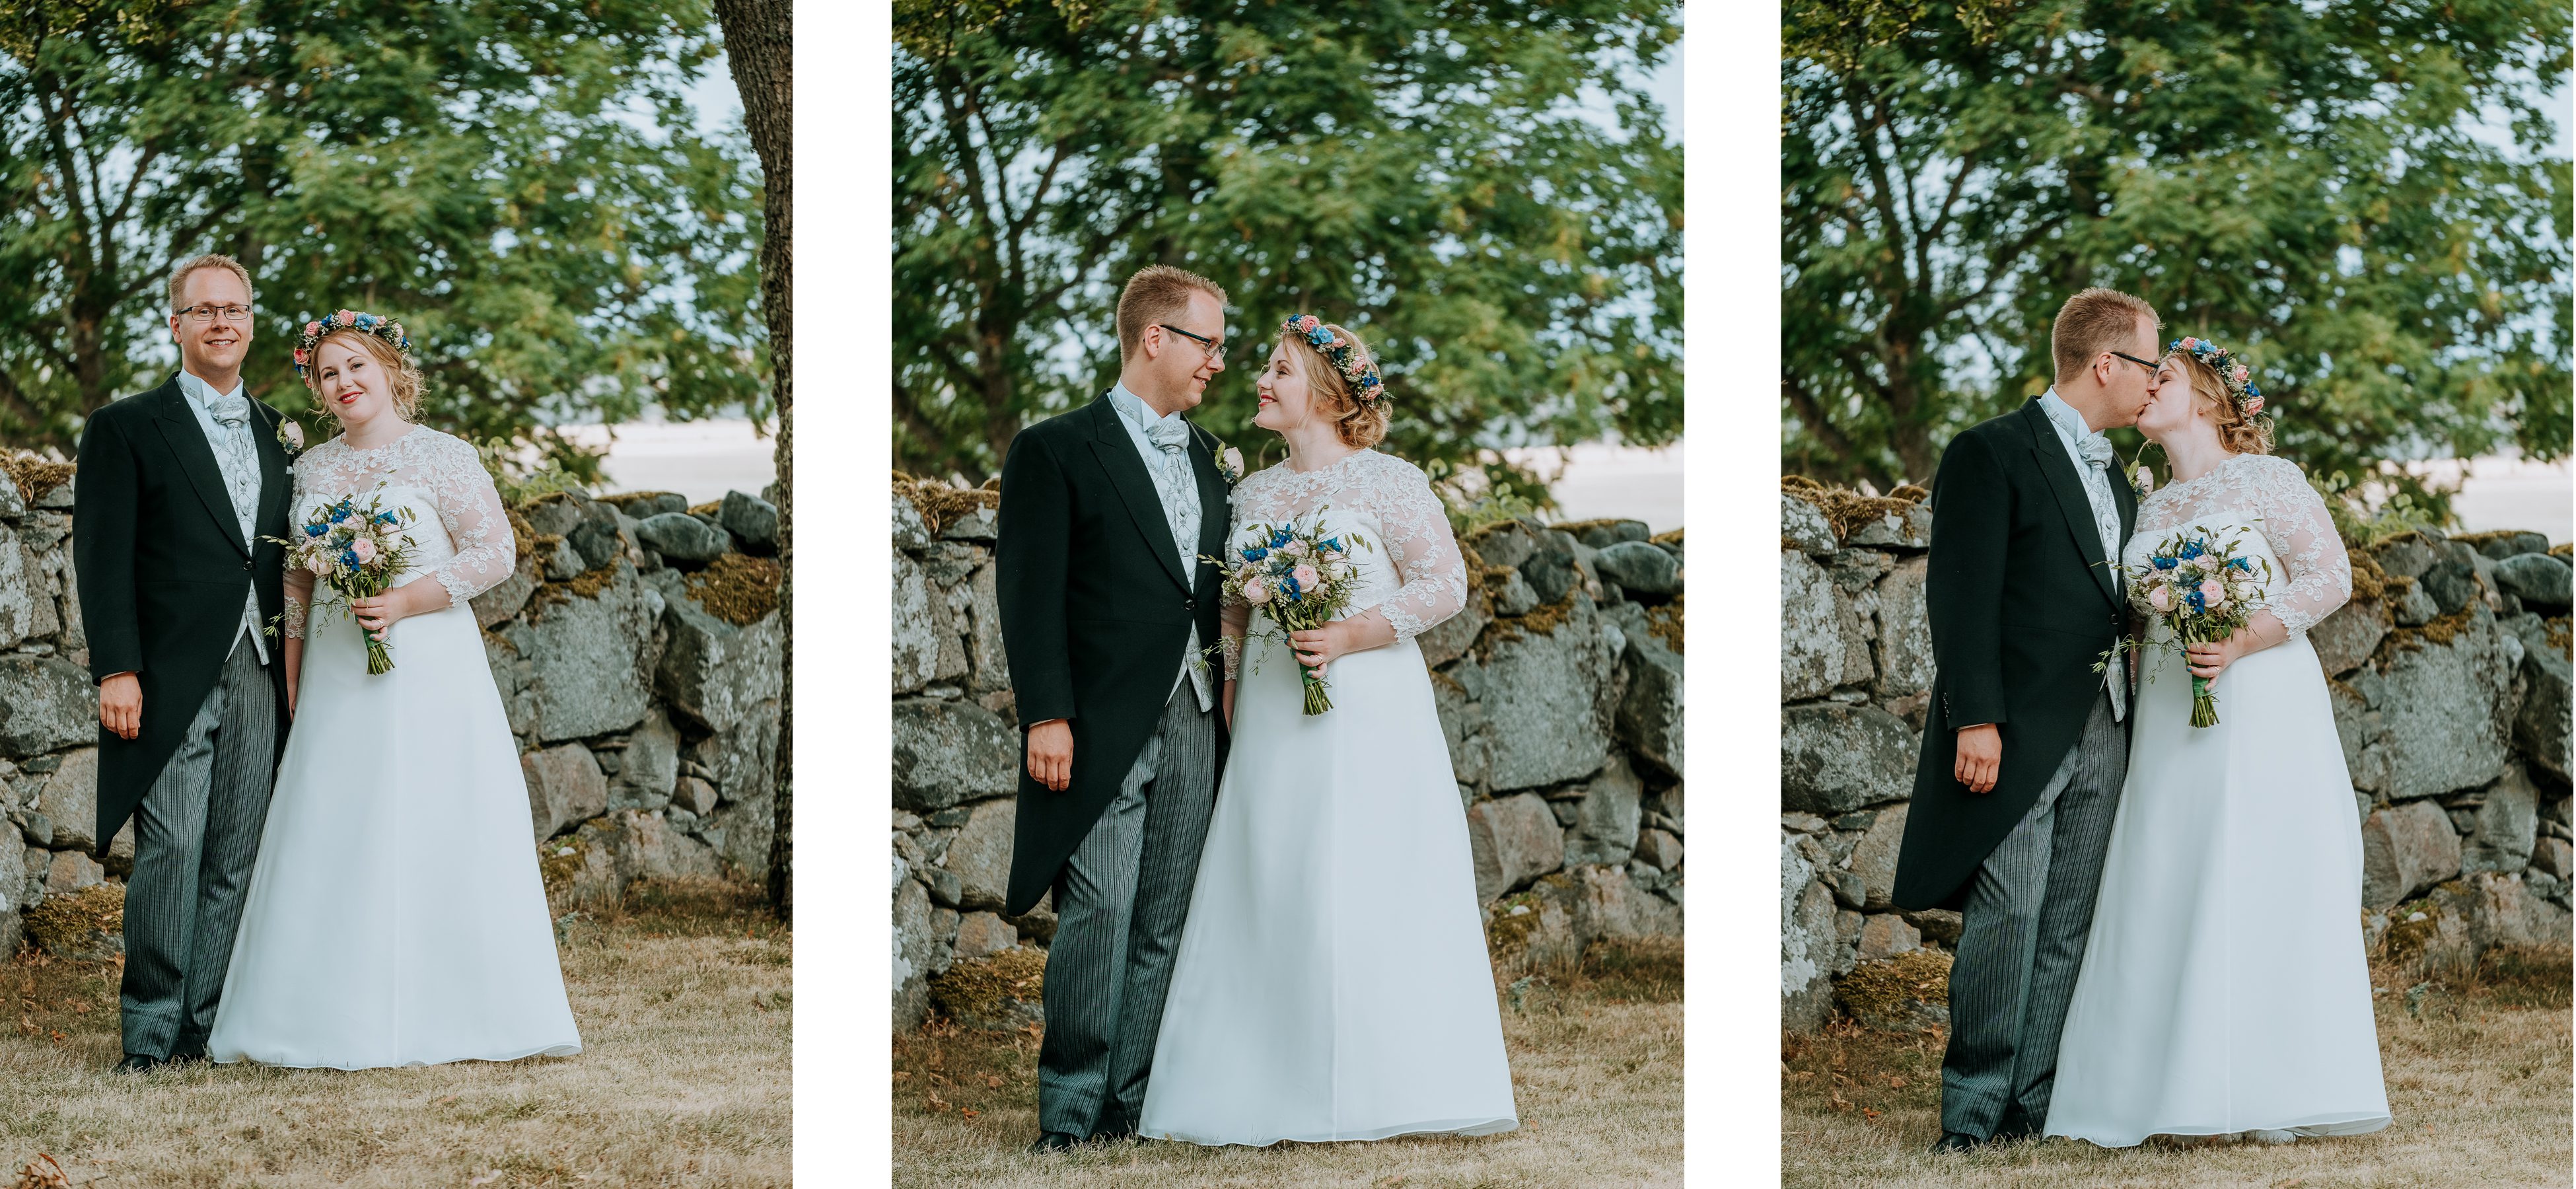 bröllopsfotograf enköping mälardalen västerås sala strängnäs uppsala